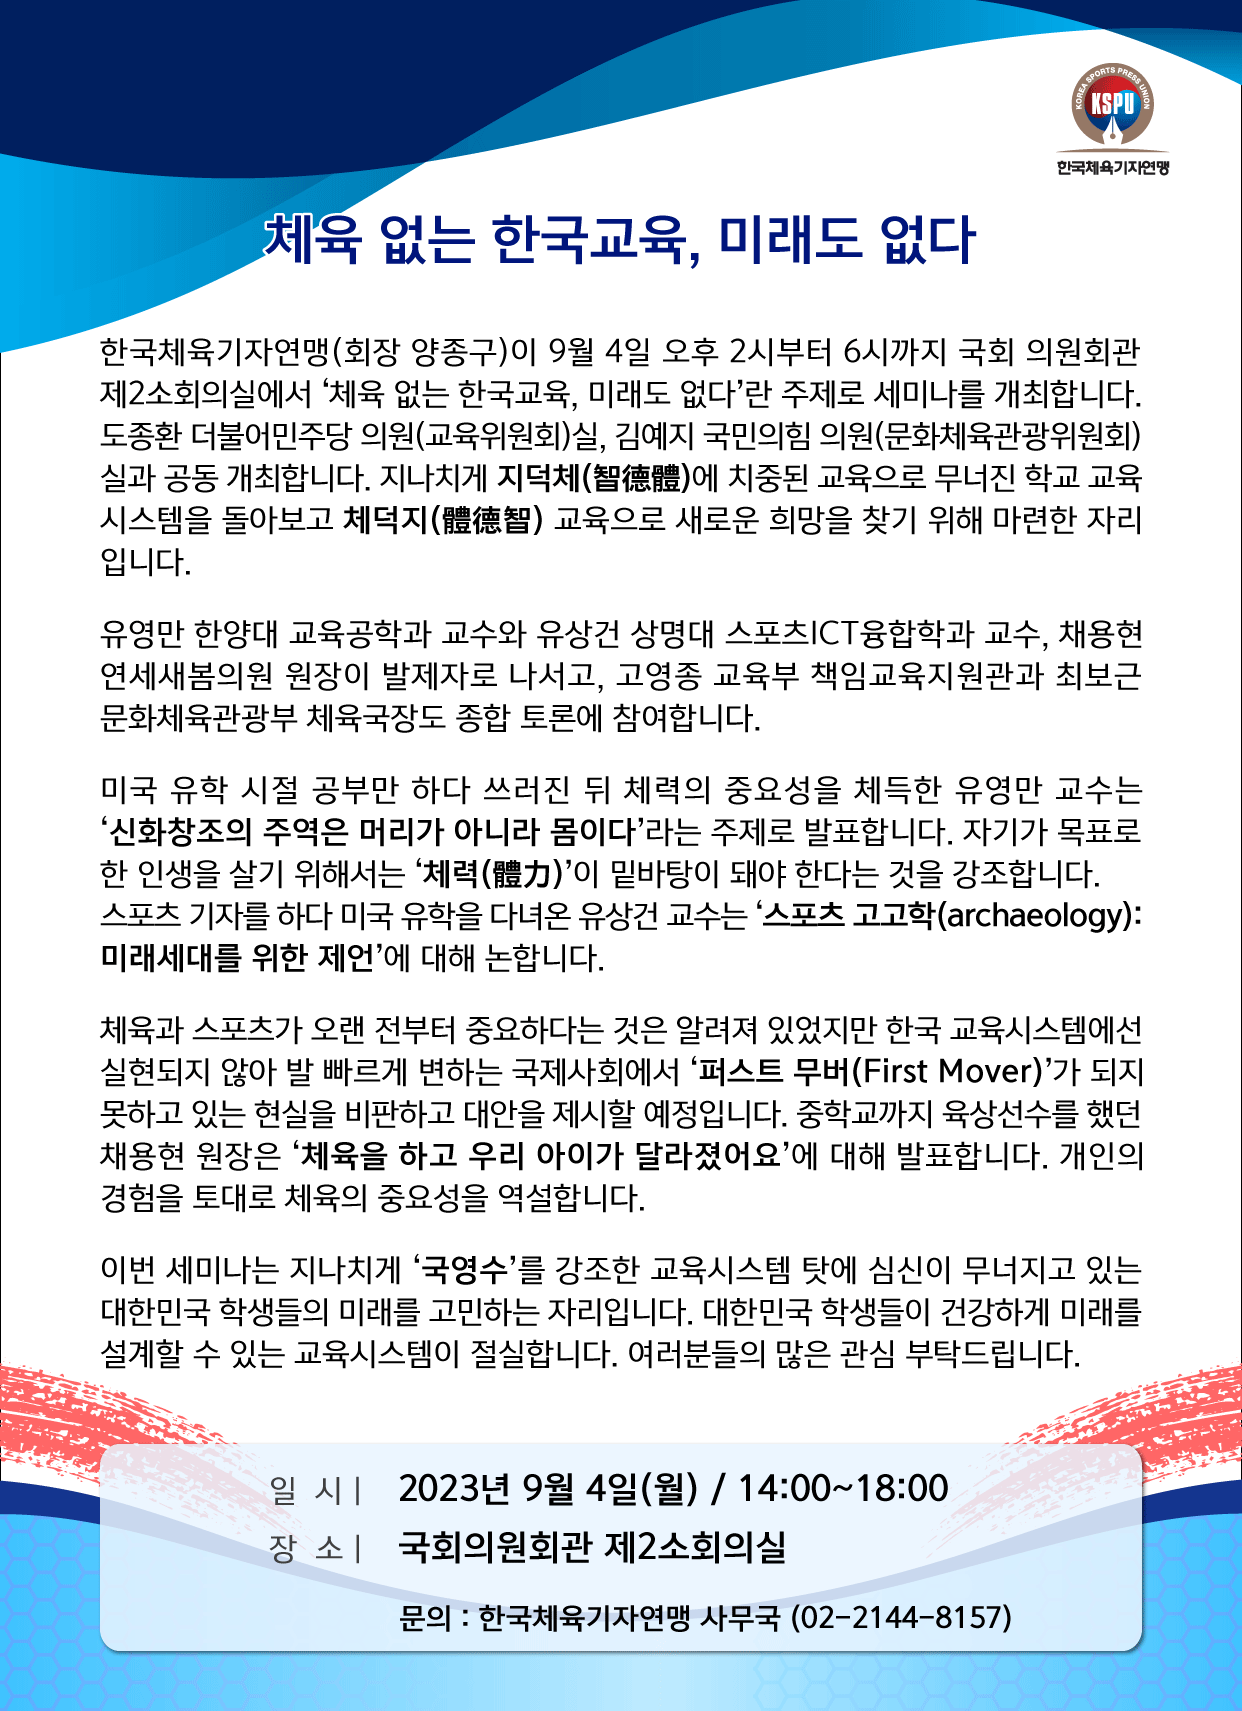 체육기자연맹 '체육 없는 한국교육, 미래도 없다' 주제로 9월 4일 국회서 세미나 개최